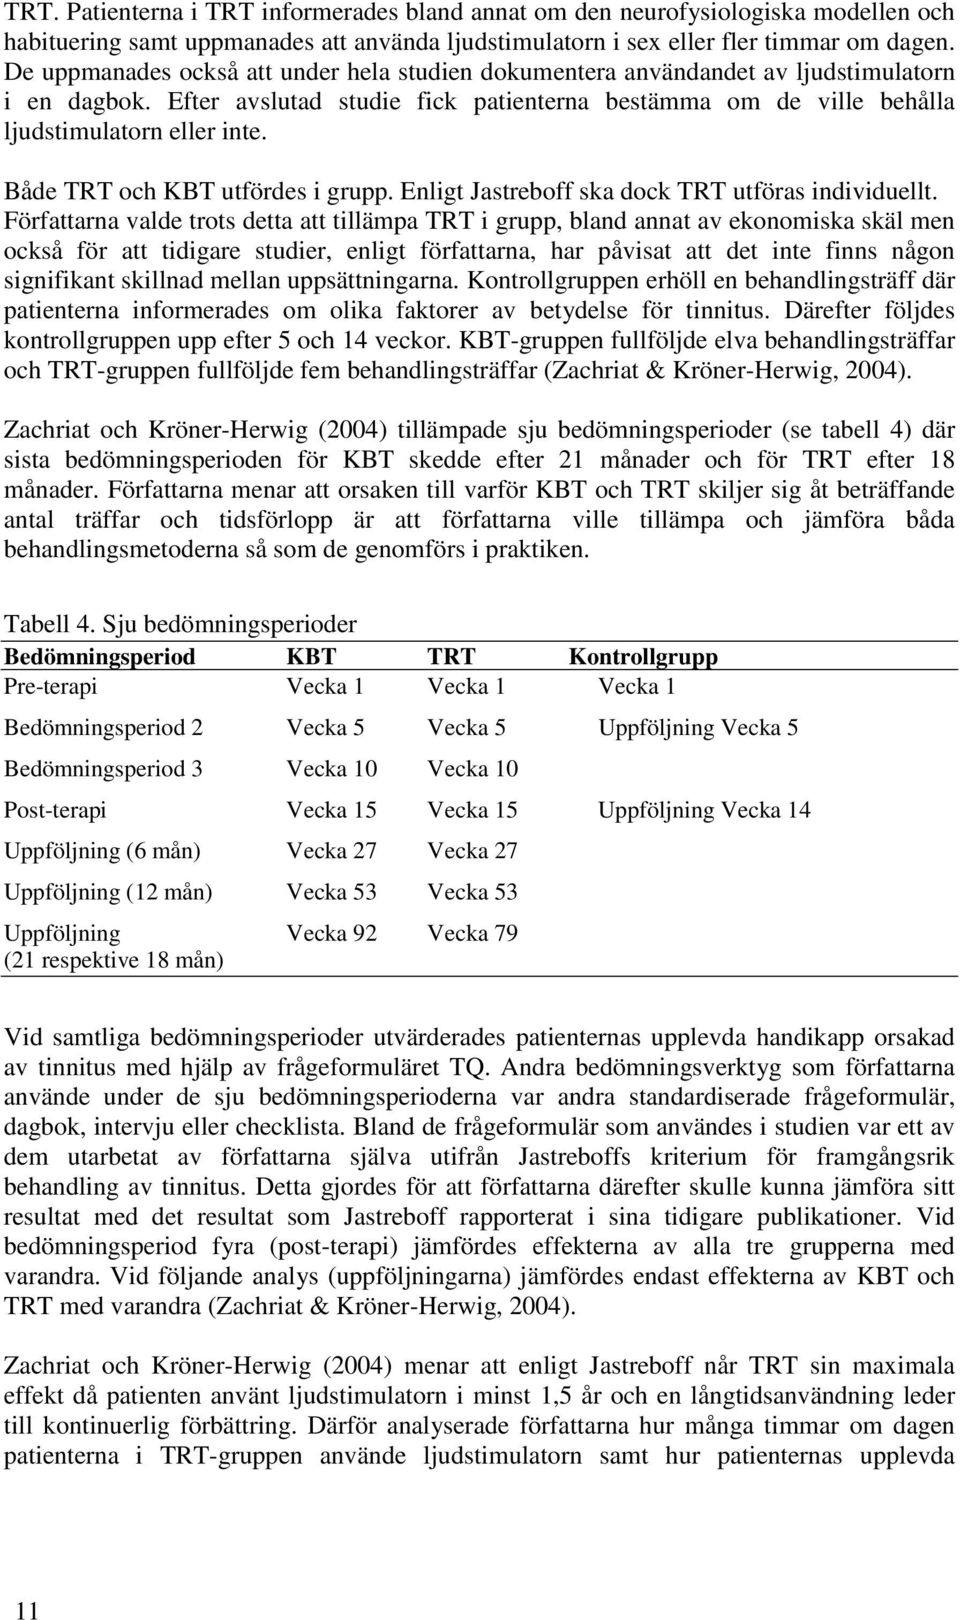 Både TRT och KBT utfördes i grupp. Enligt Jastreboff ska dock TRT utföras individuellt.